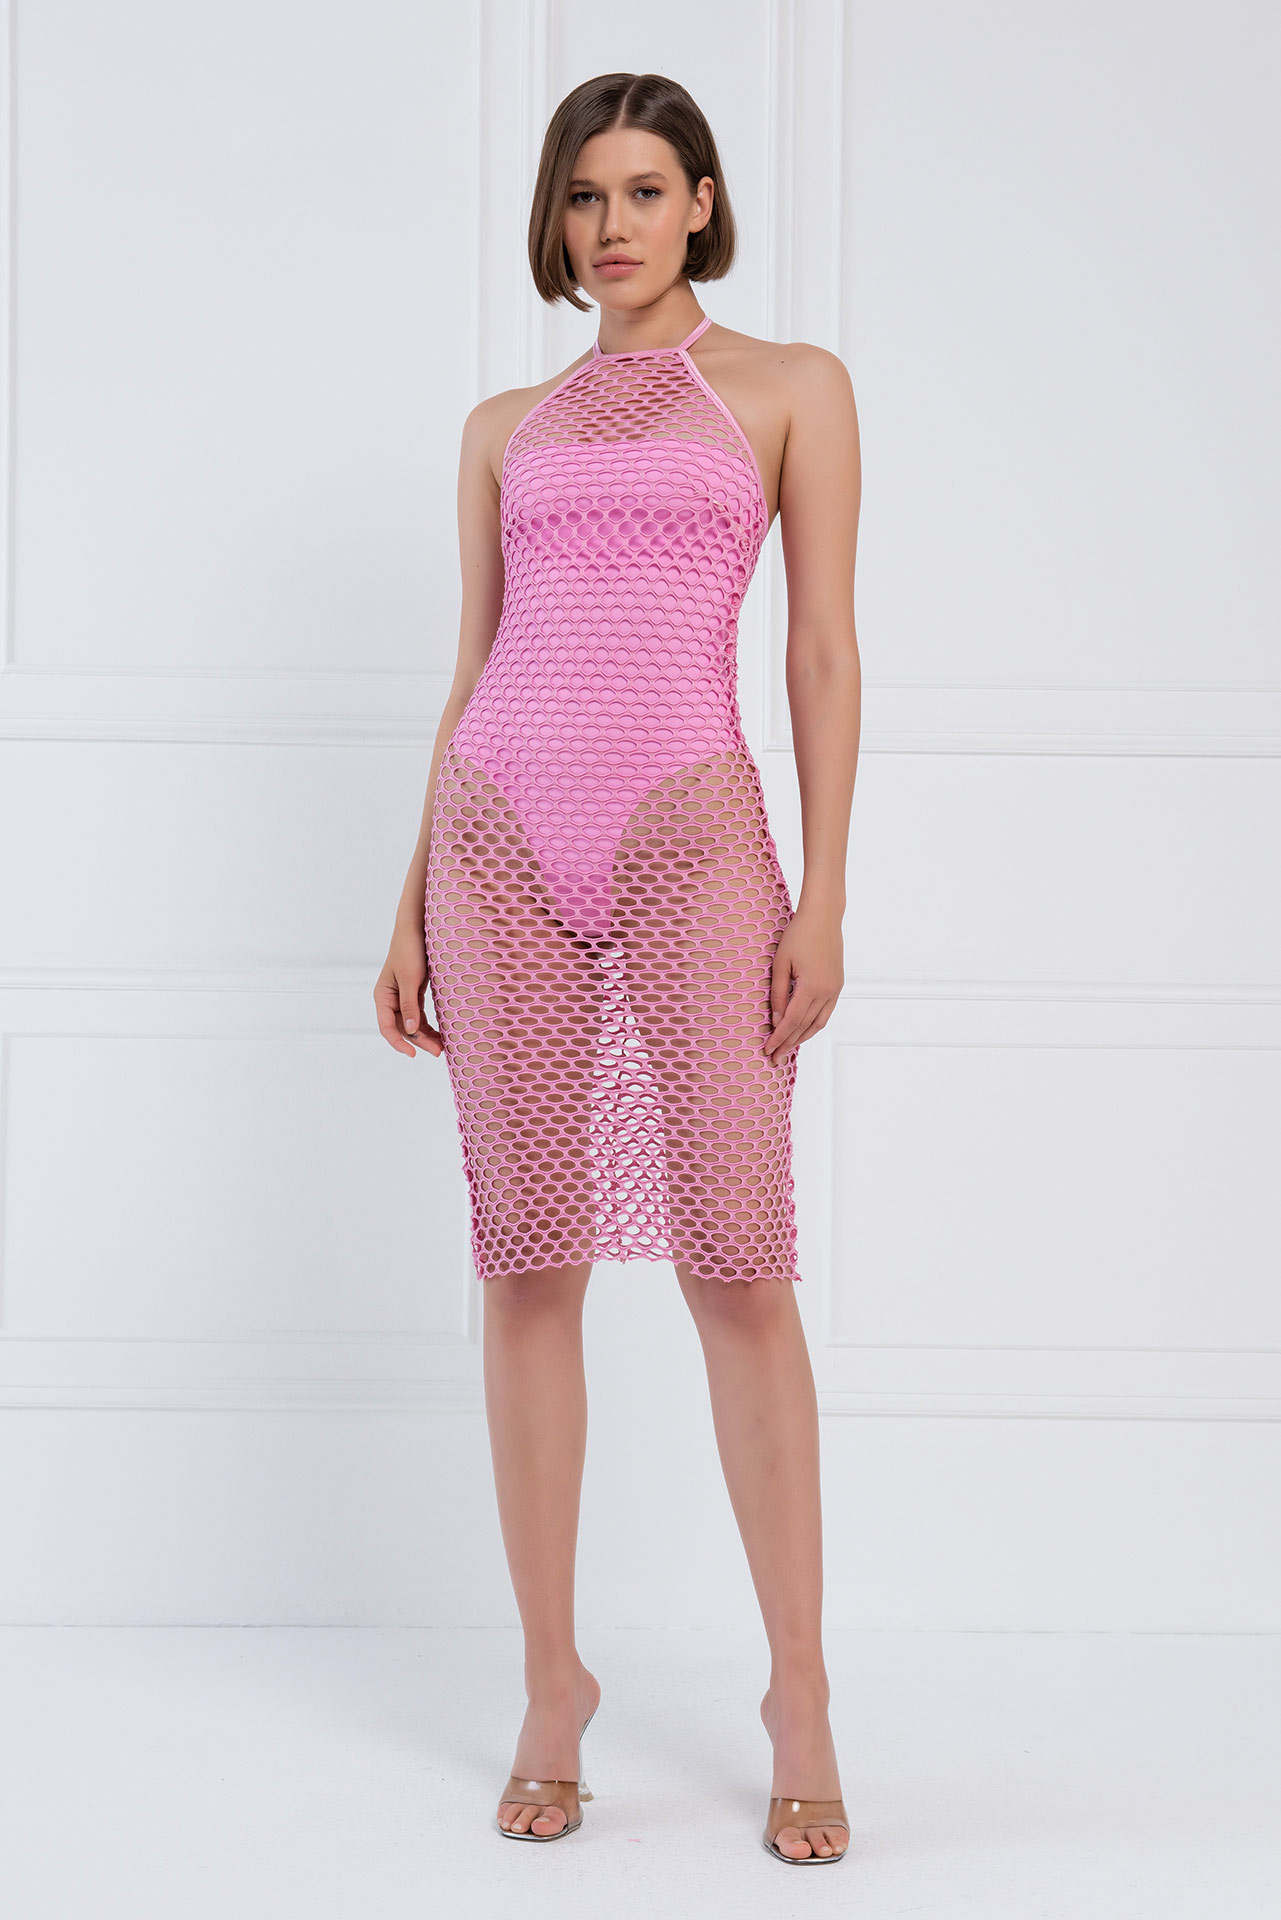 Halter Neck Pink Fishnet Dress